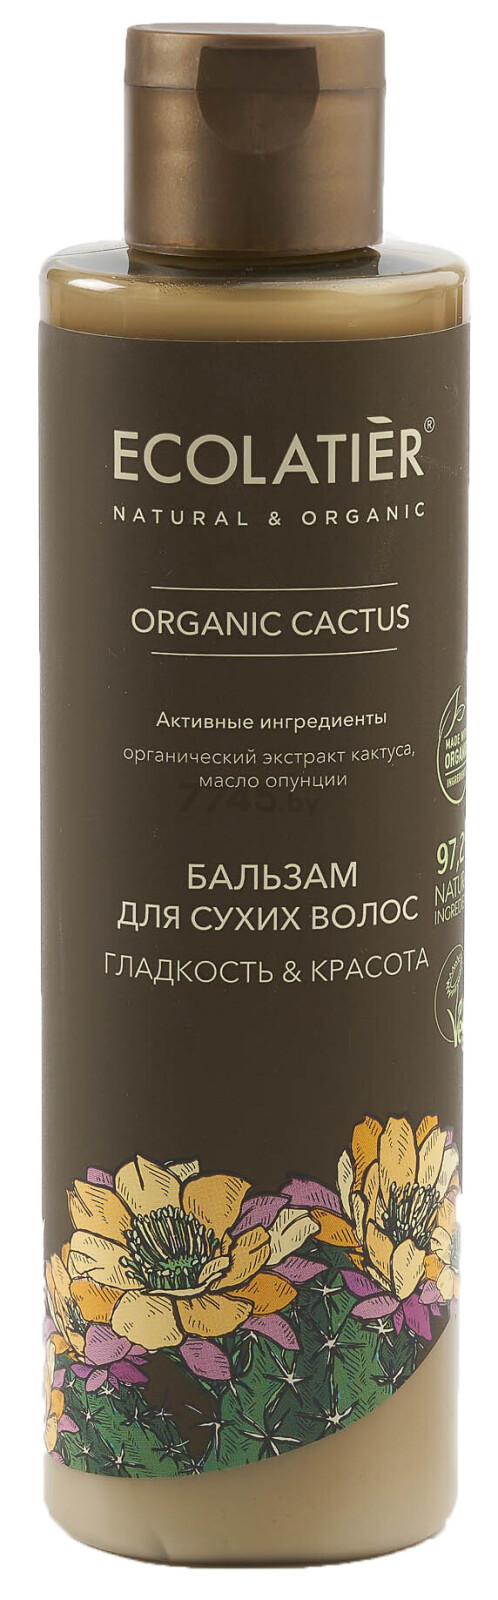 Бальзам ECOLATIER Organic Cactus Гладкость и Красота 250 мл (4620046172675)